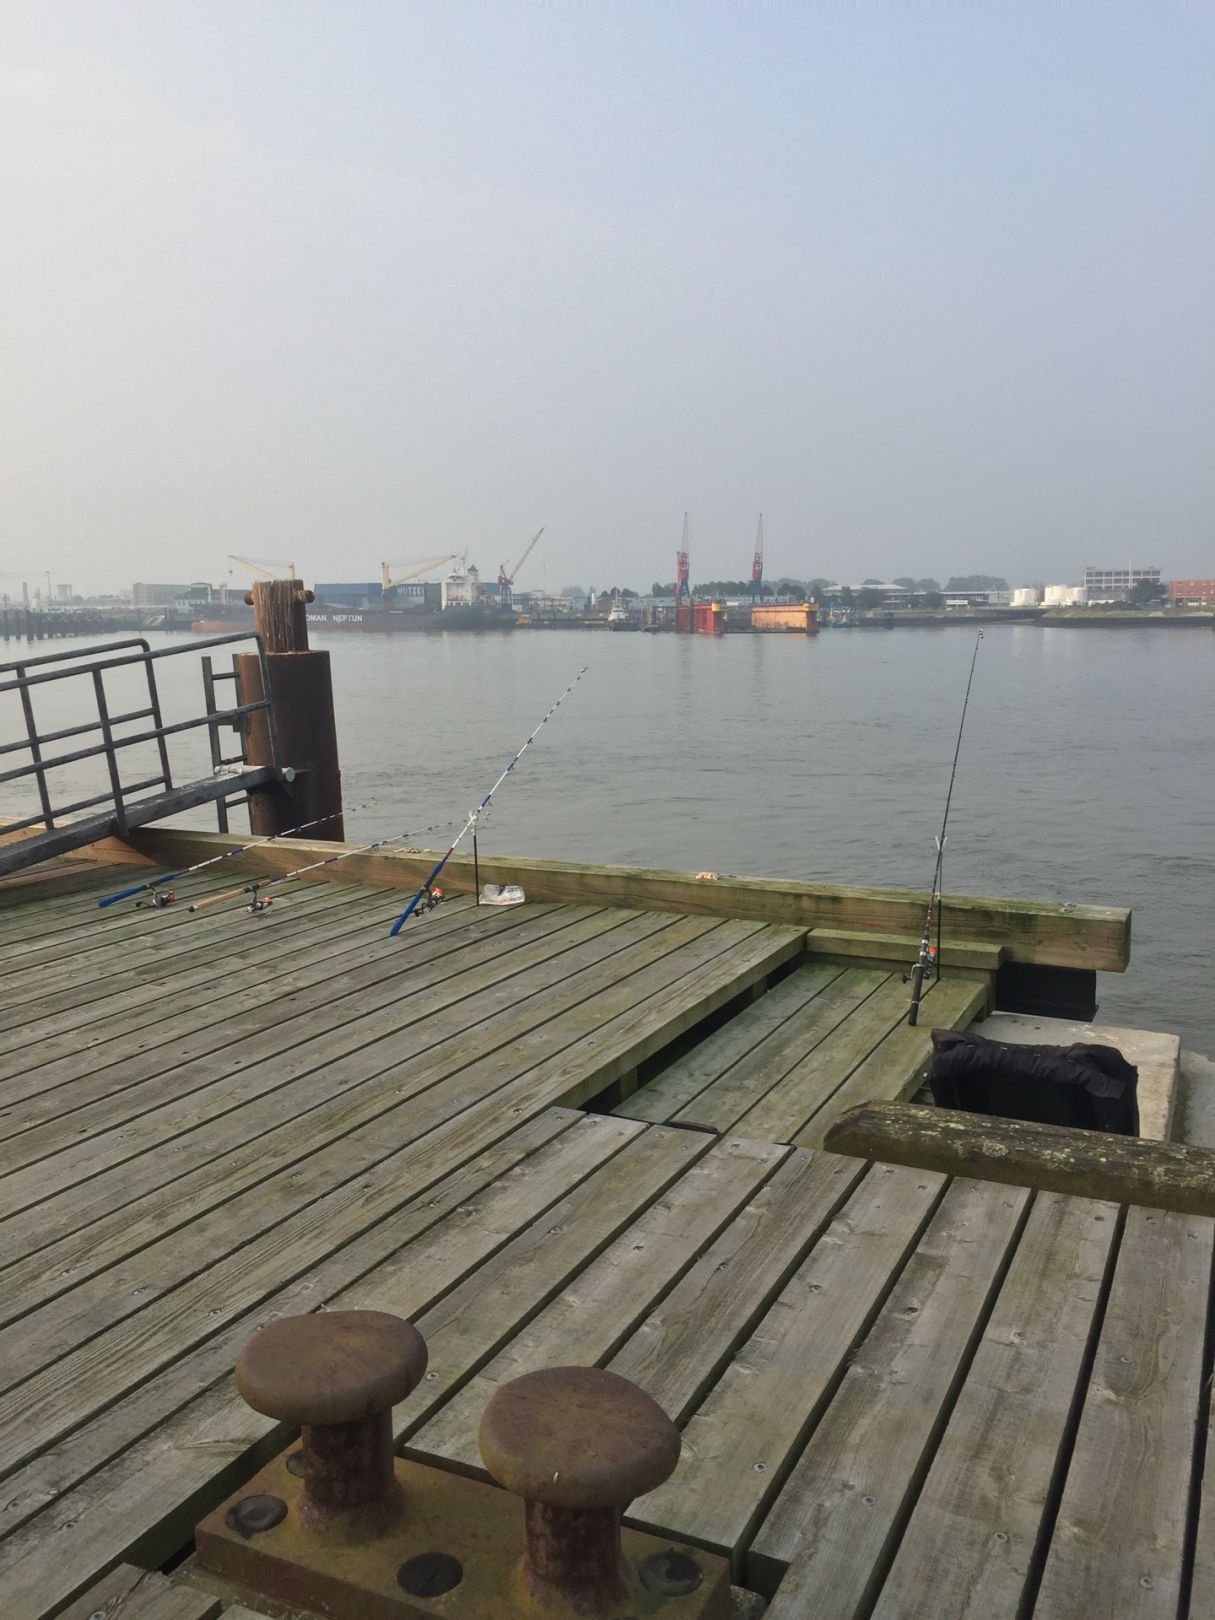 Amerikahafen Cuxhaven angeln